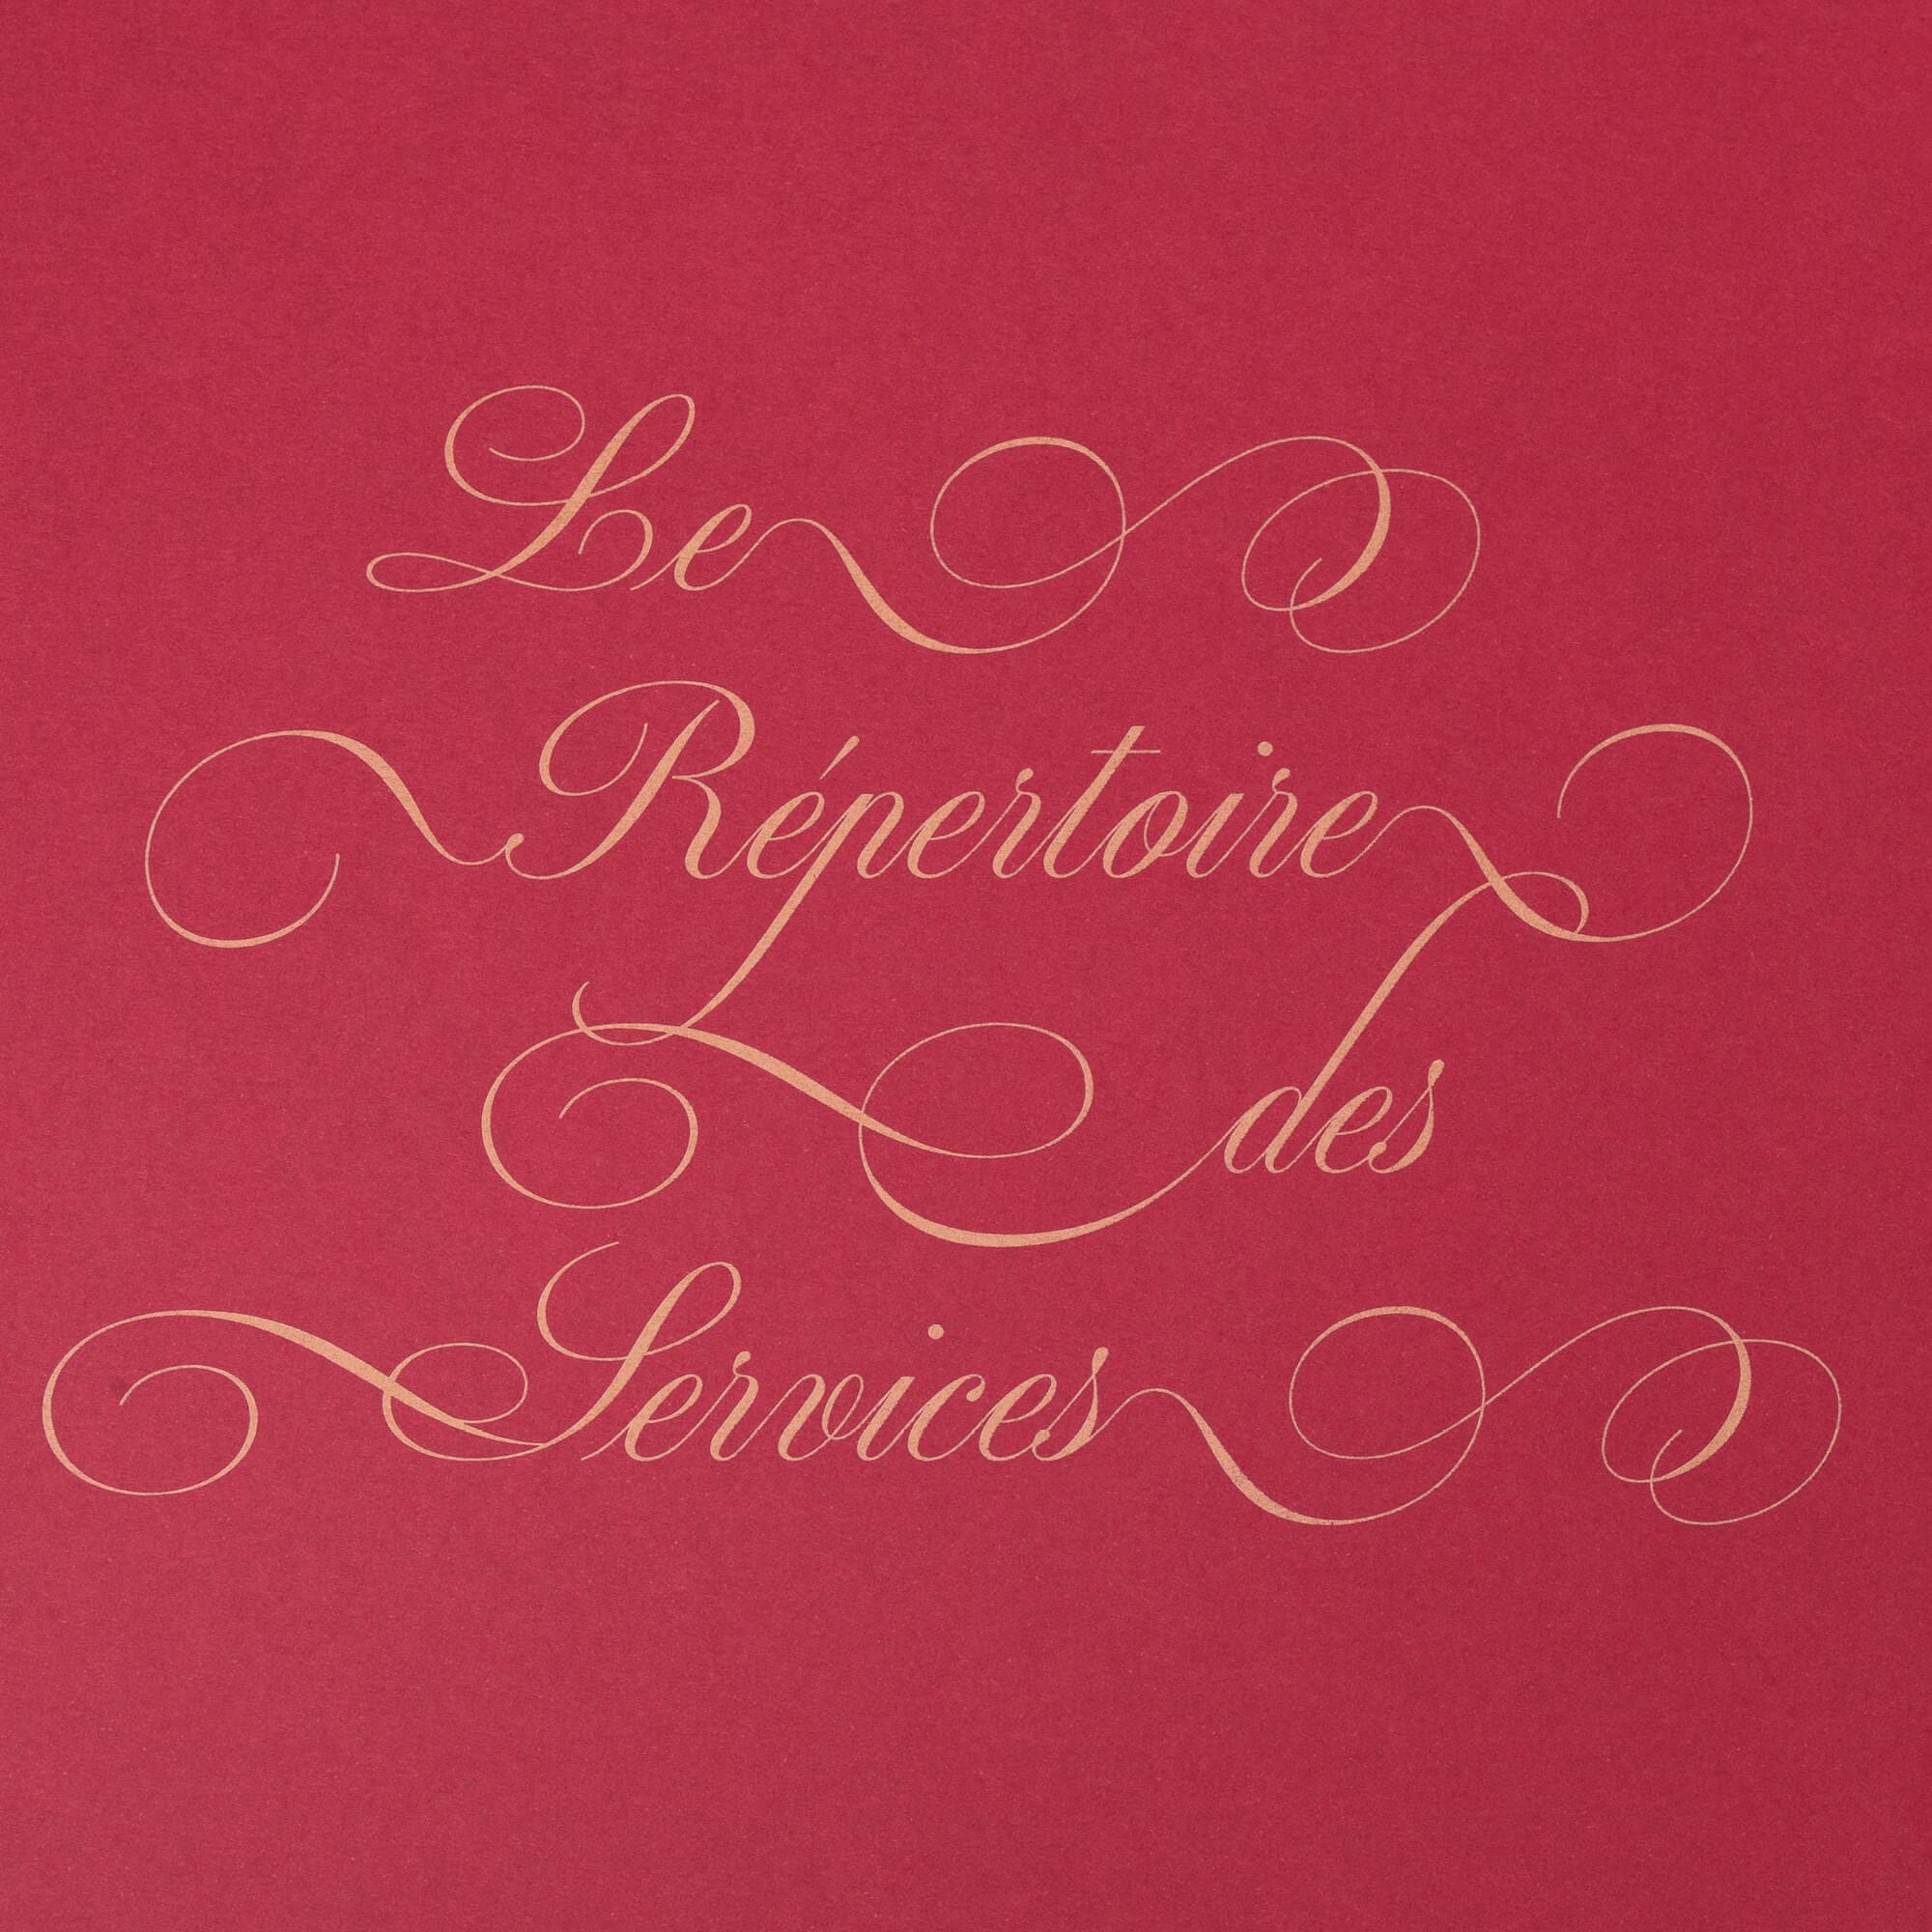 Le repertoire des services : composition typographique signé IchetKar pour le room book du château Louise de la Vallière, favorite du roi louis XIV